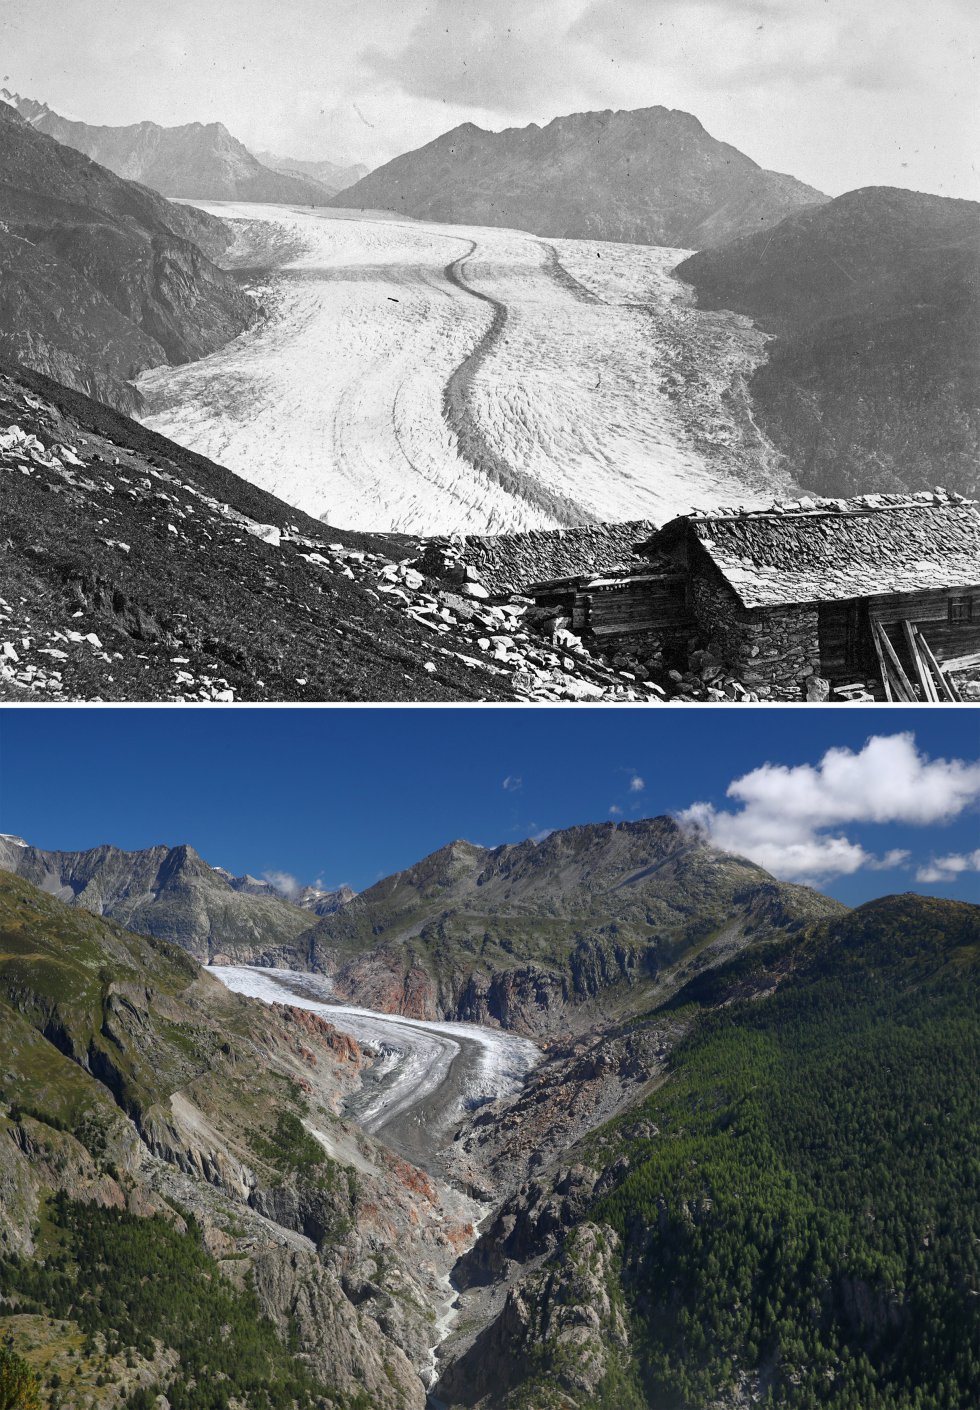 La última imagen corresponde al glaciar Aletsch, en 1865 y en la actualidad. Denis Balibouse además de tomar las fotos también ha publicado un vídeo con su trabajo,  que puedes ver aquí.  Una de las consecuencias del calentamiento global en esta zona del mundo es que cadáveres atrapados en los glaciares salen a la superficie después de décadas congelados,  como te contamos en este 'post' de Mundo Global. 